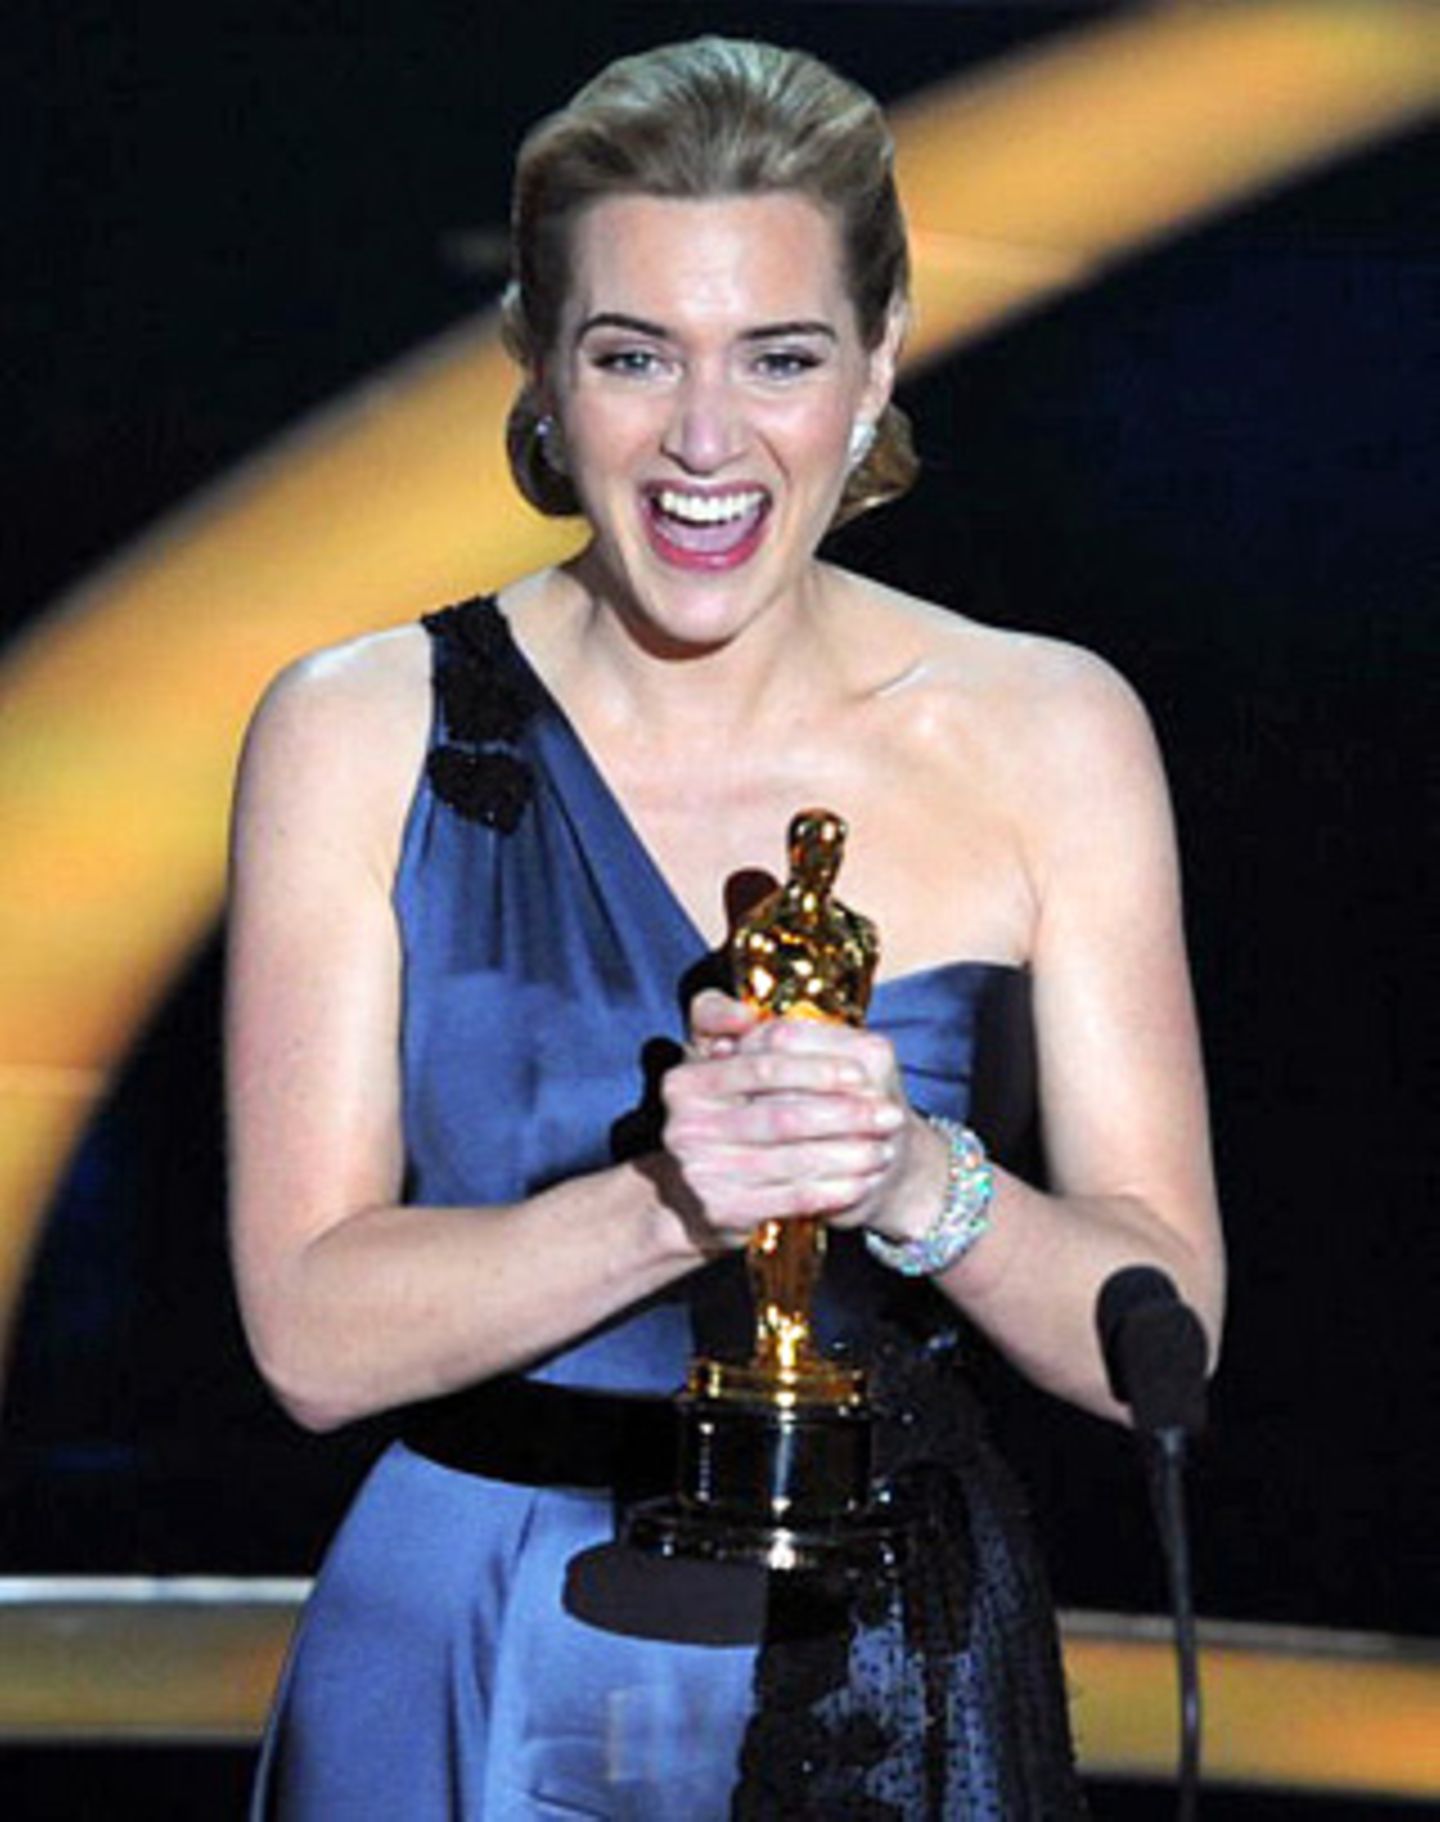 Im fünften Anlauf zu Gold: Kate Winslet bekam den Oscar als beste Hauptdarstellerin für "Der Vorleser" und gestand, schon als Achtjährige vor dem Spiegel für diesen großen Moment geübt zu haben - mit einer Shampoo-Flasche als Oscar-Ersatz.